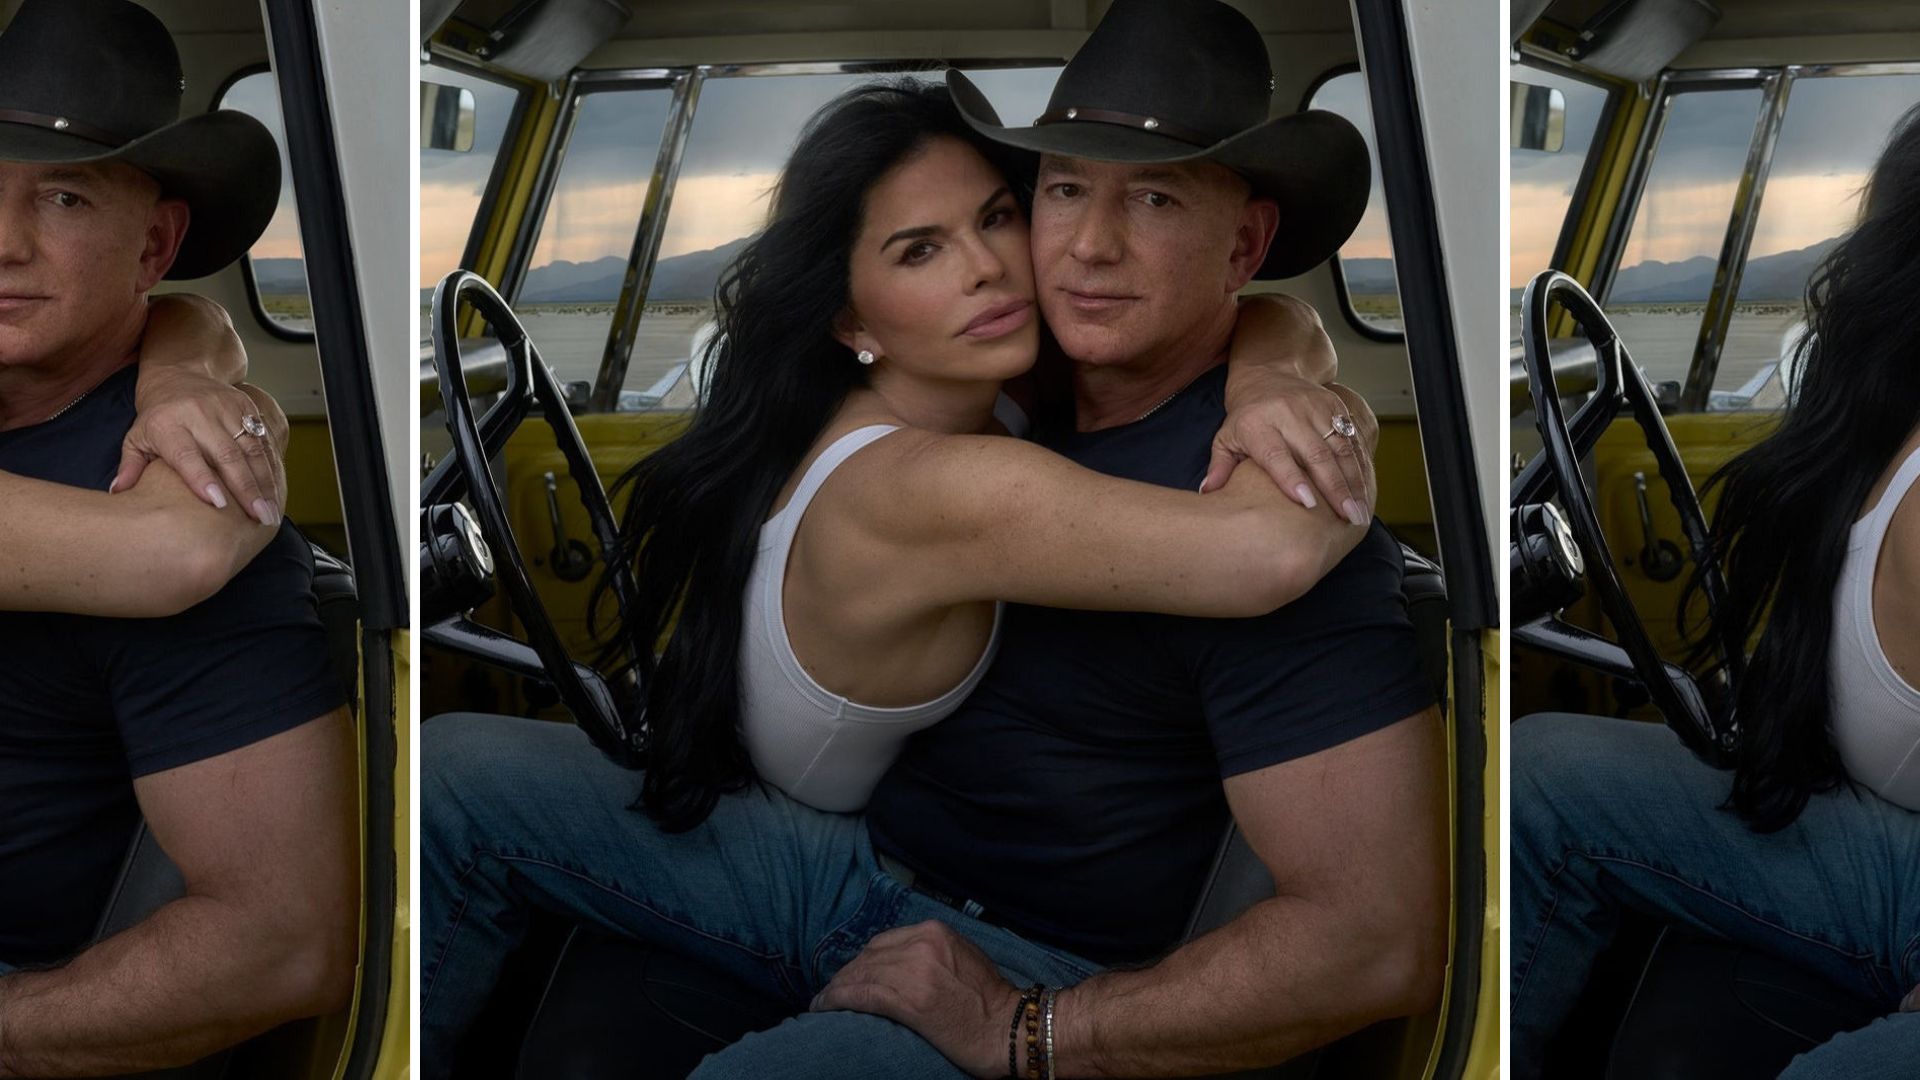 Pourquoi le chapeau de cowboy de Jeff Bezos énerve les vrais cowboys // Source : Lauren Sánchez et Jeff Bezos photographiés par Annie Leibovitz pour le Vogue US de décembre 2023 / Capture d'écran Instagram